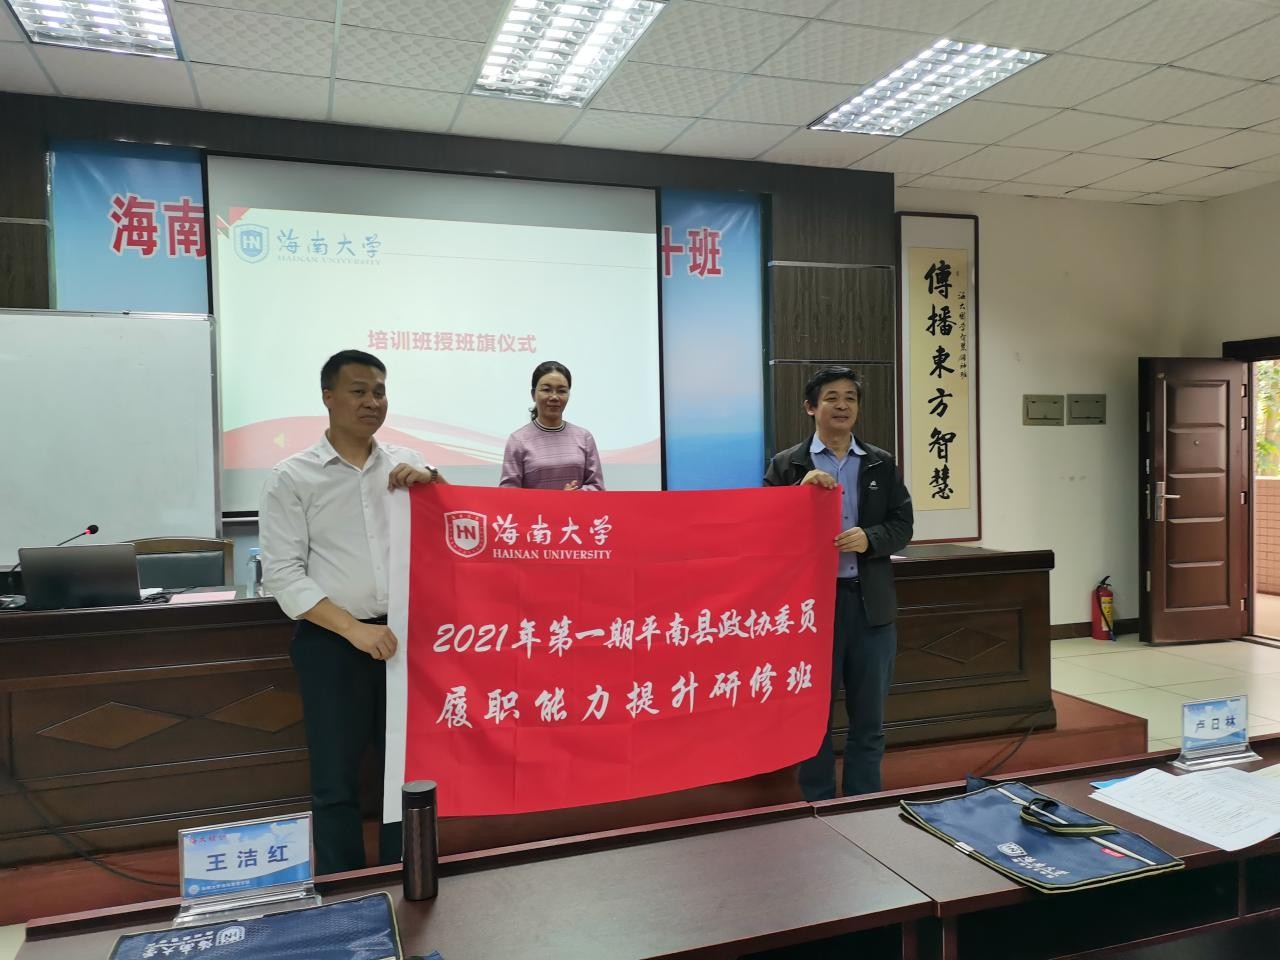 2021年第一期平南县政协委员履职能力提升研修班顺利开班